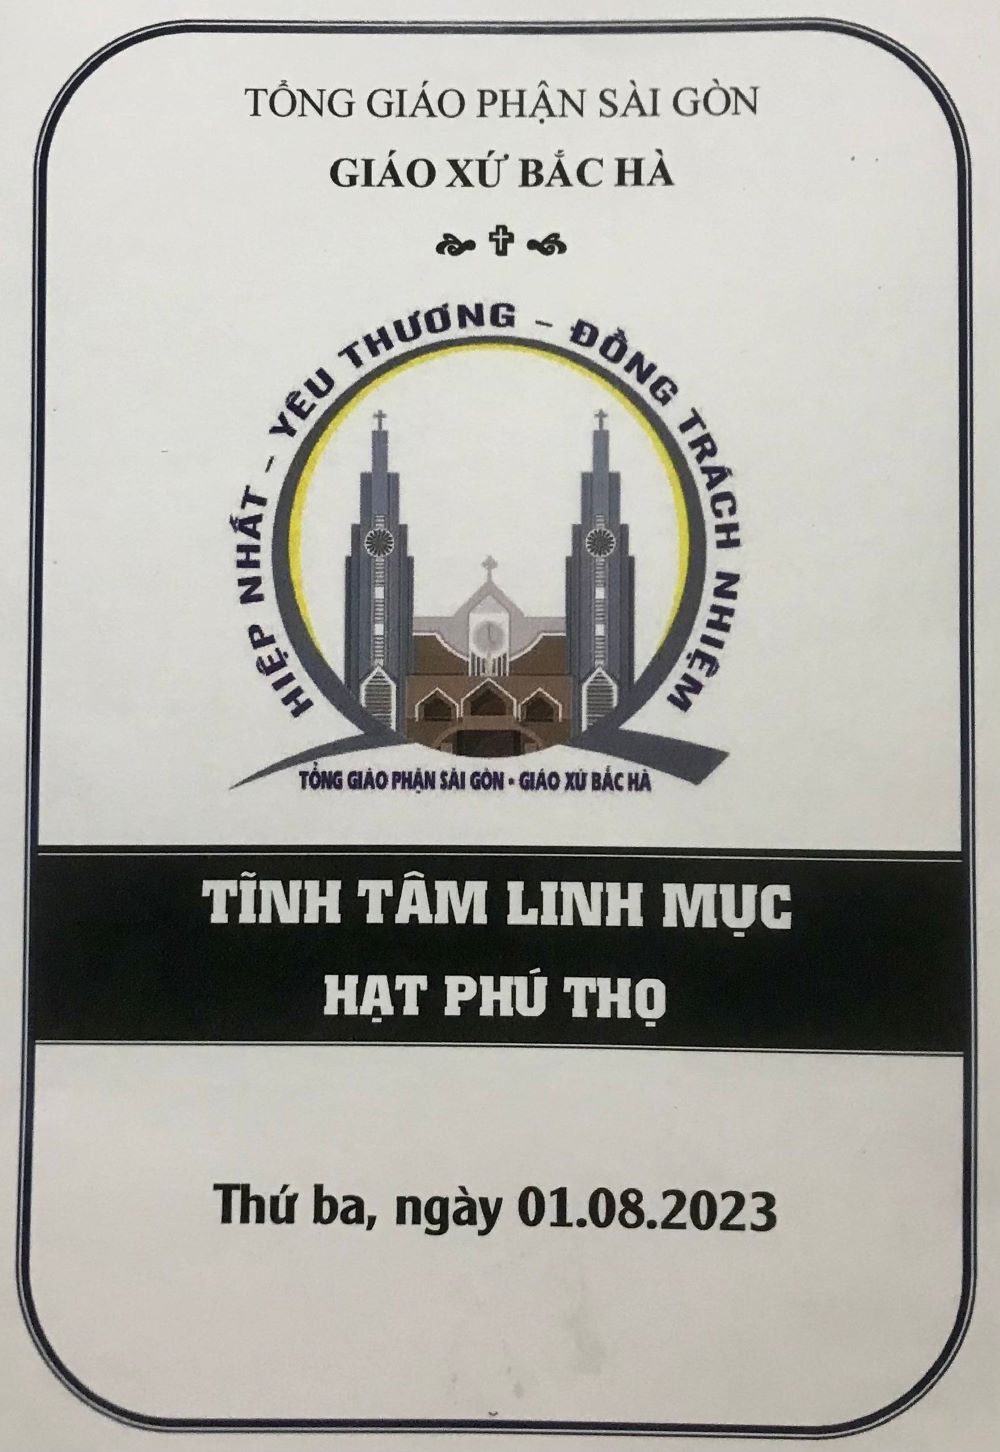 Tĩnh tâm Linh mục Hạt Phú Thọ - 01.08.2023